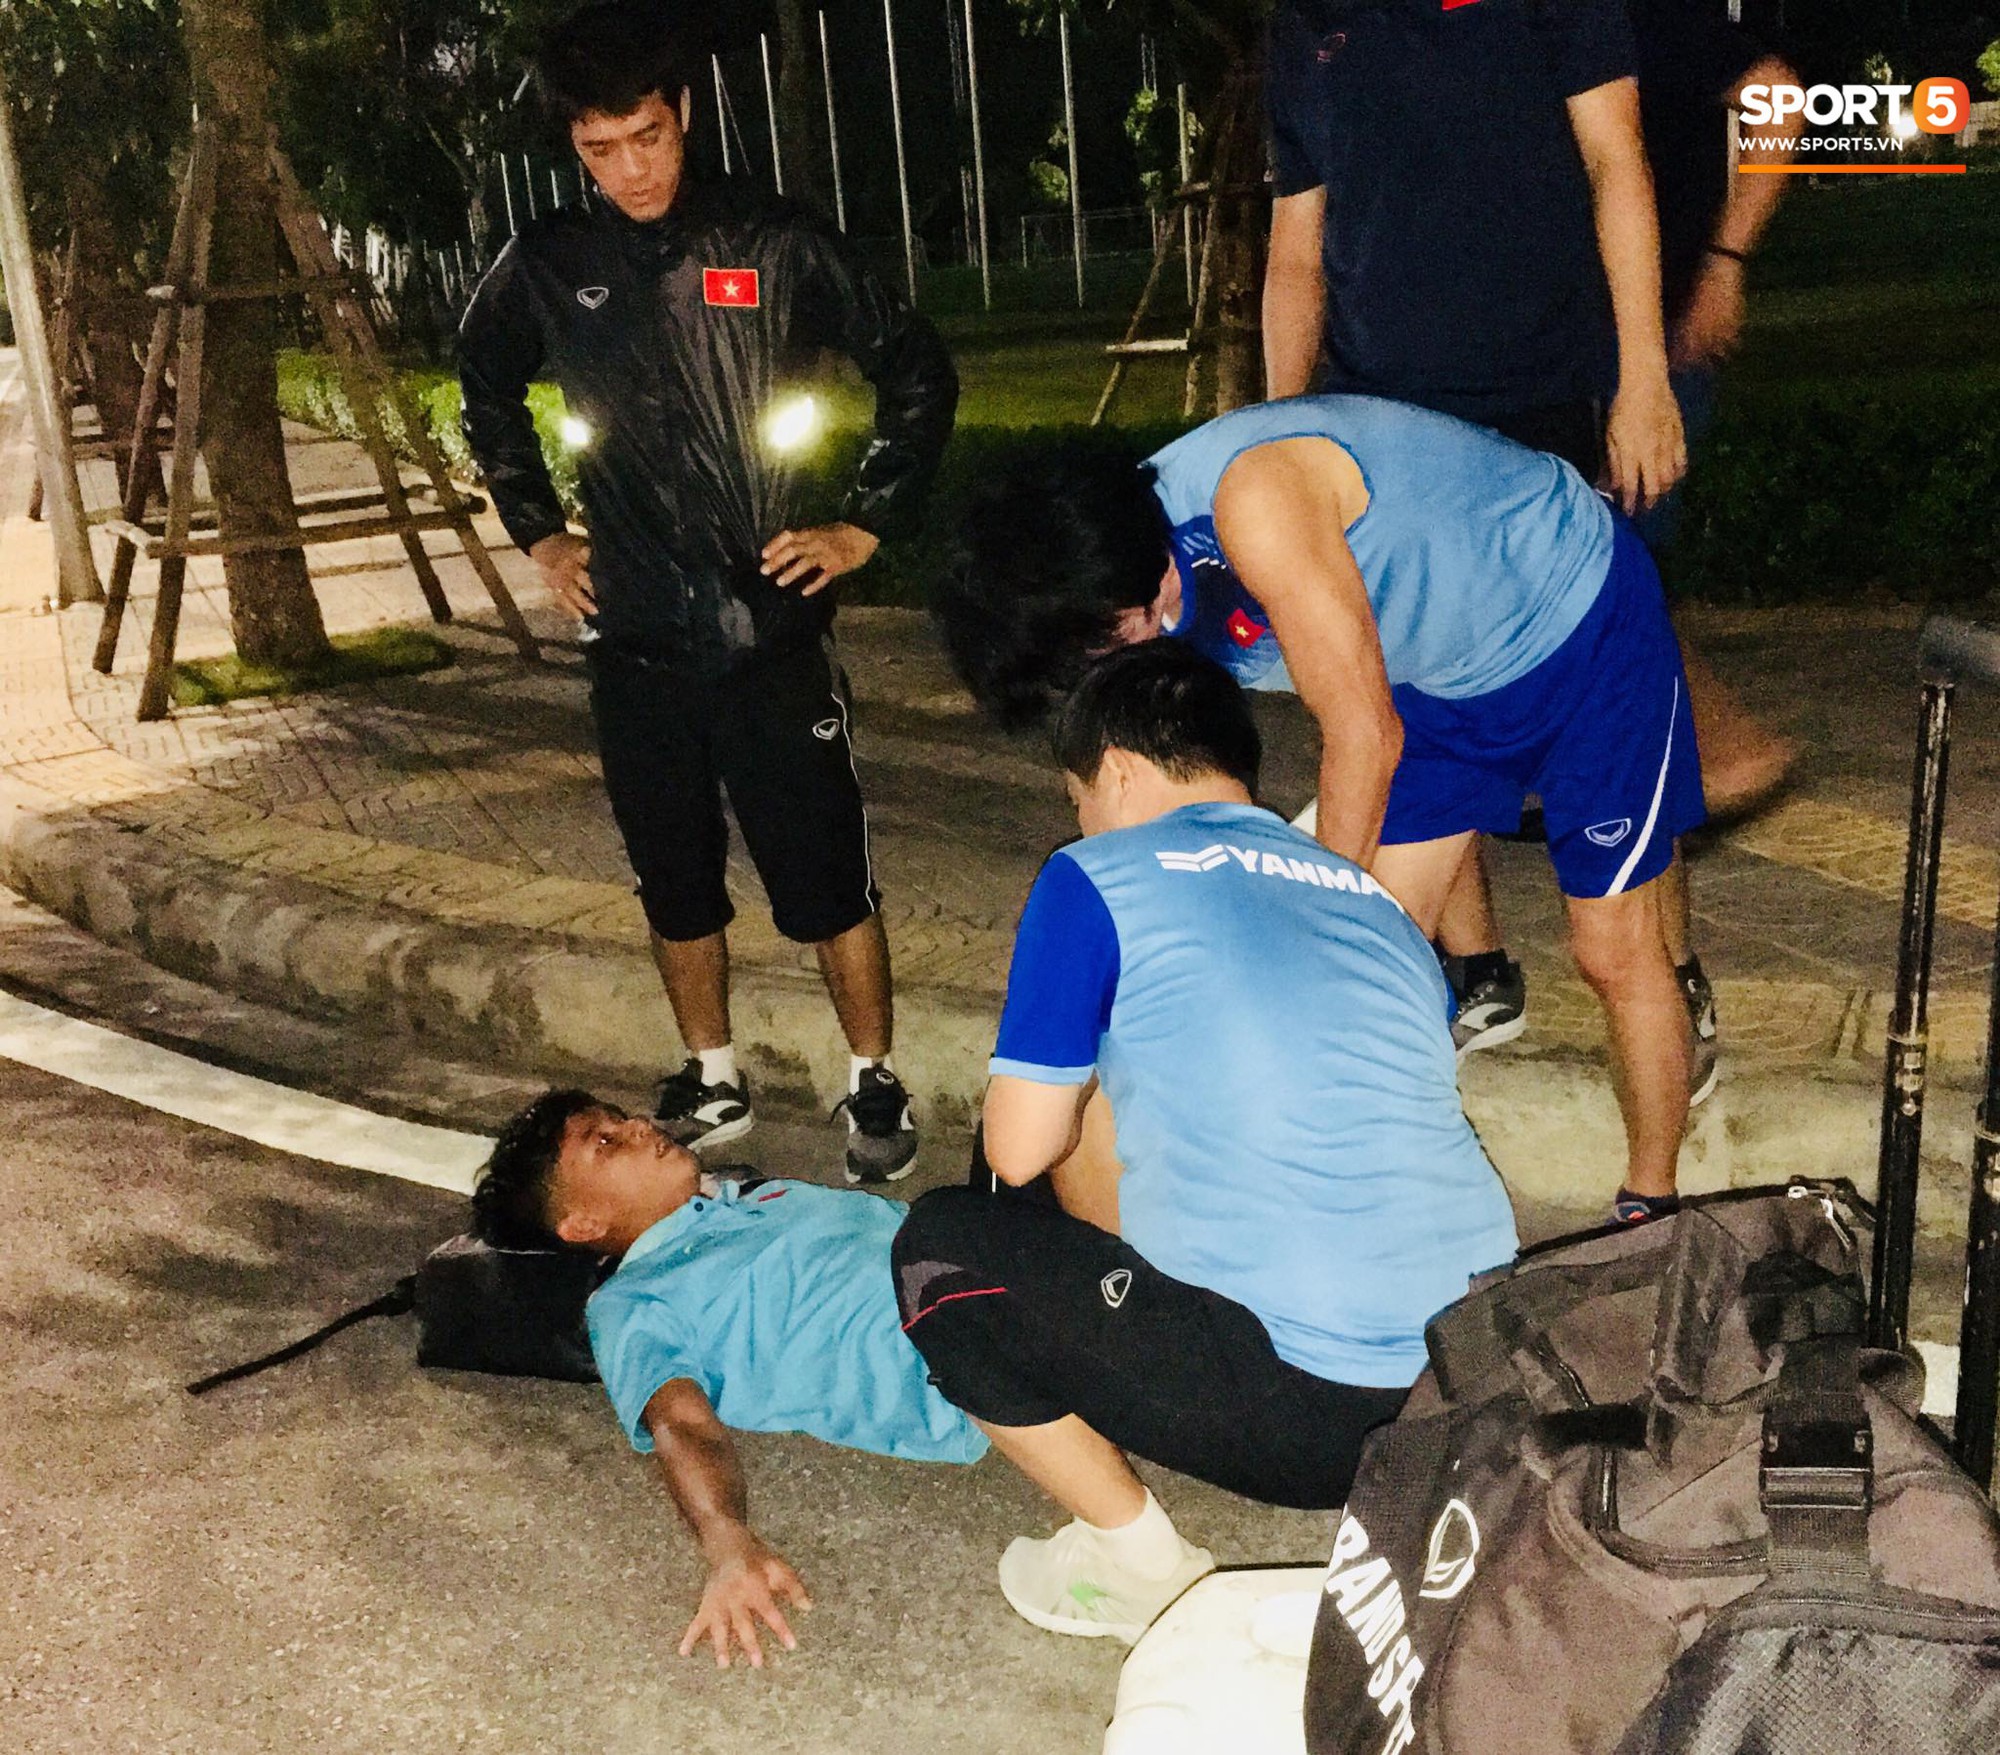 Cầu thủ U18 Việt Nam đau đến phát khóc, được thần y Hàn Quốc chữa ngay trên ngay trên đường - Ảnh 1.